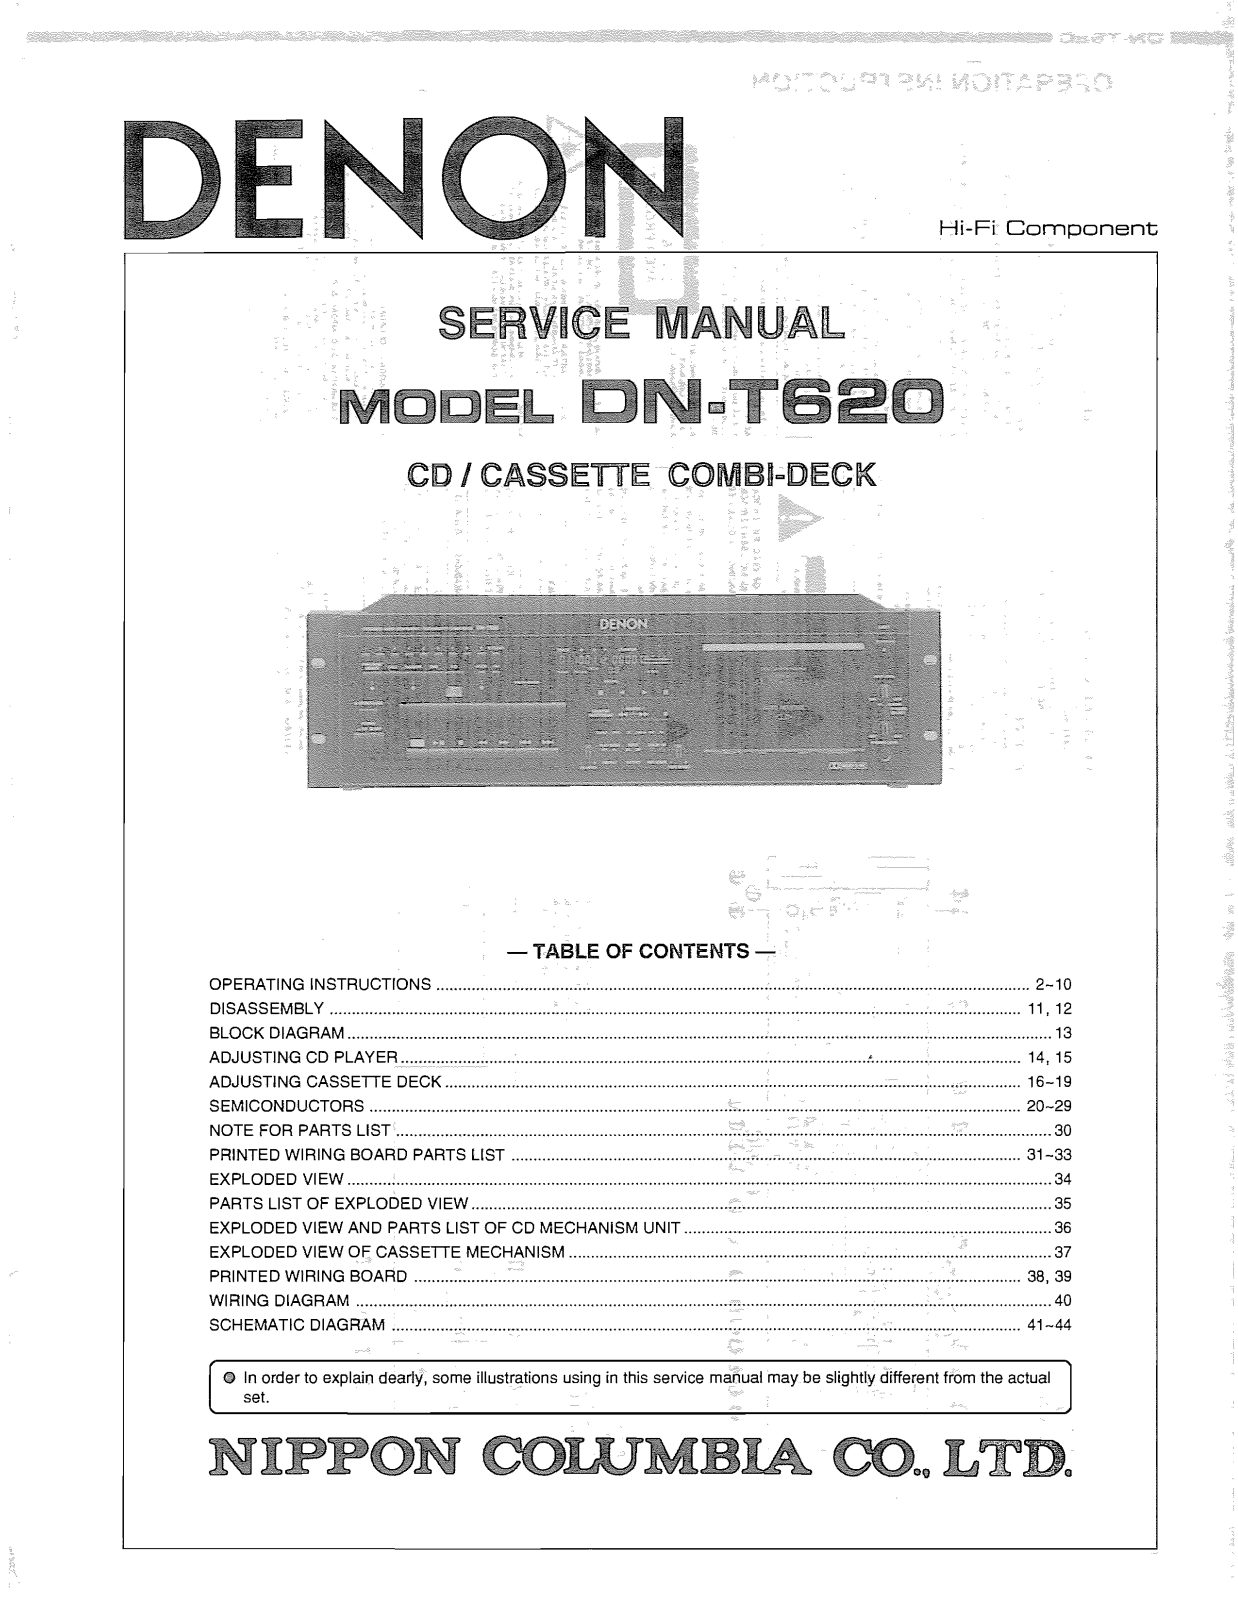 Denon DN-T620 Service Manual